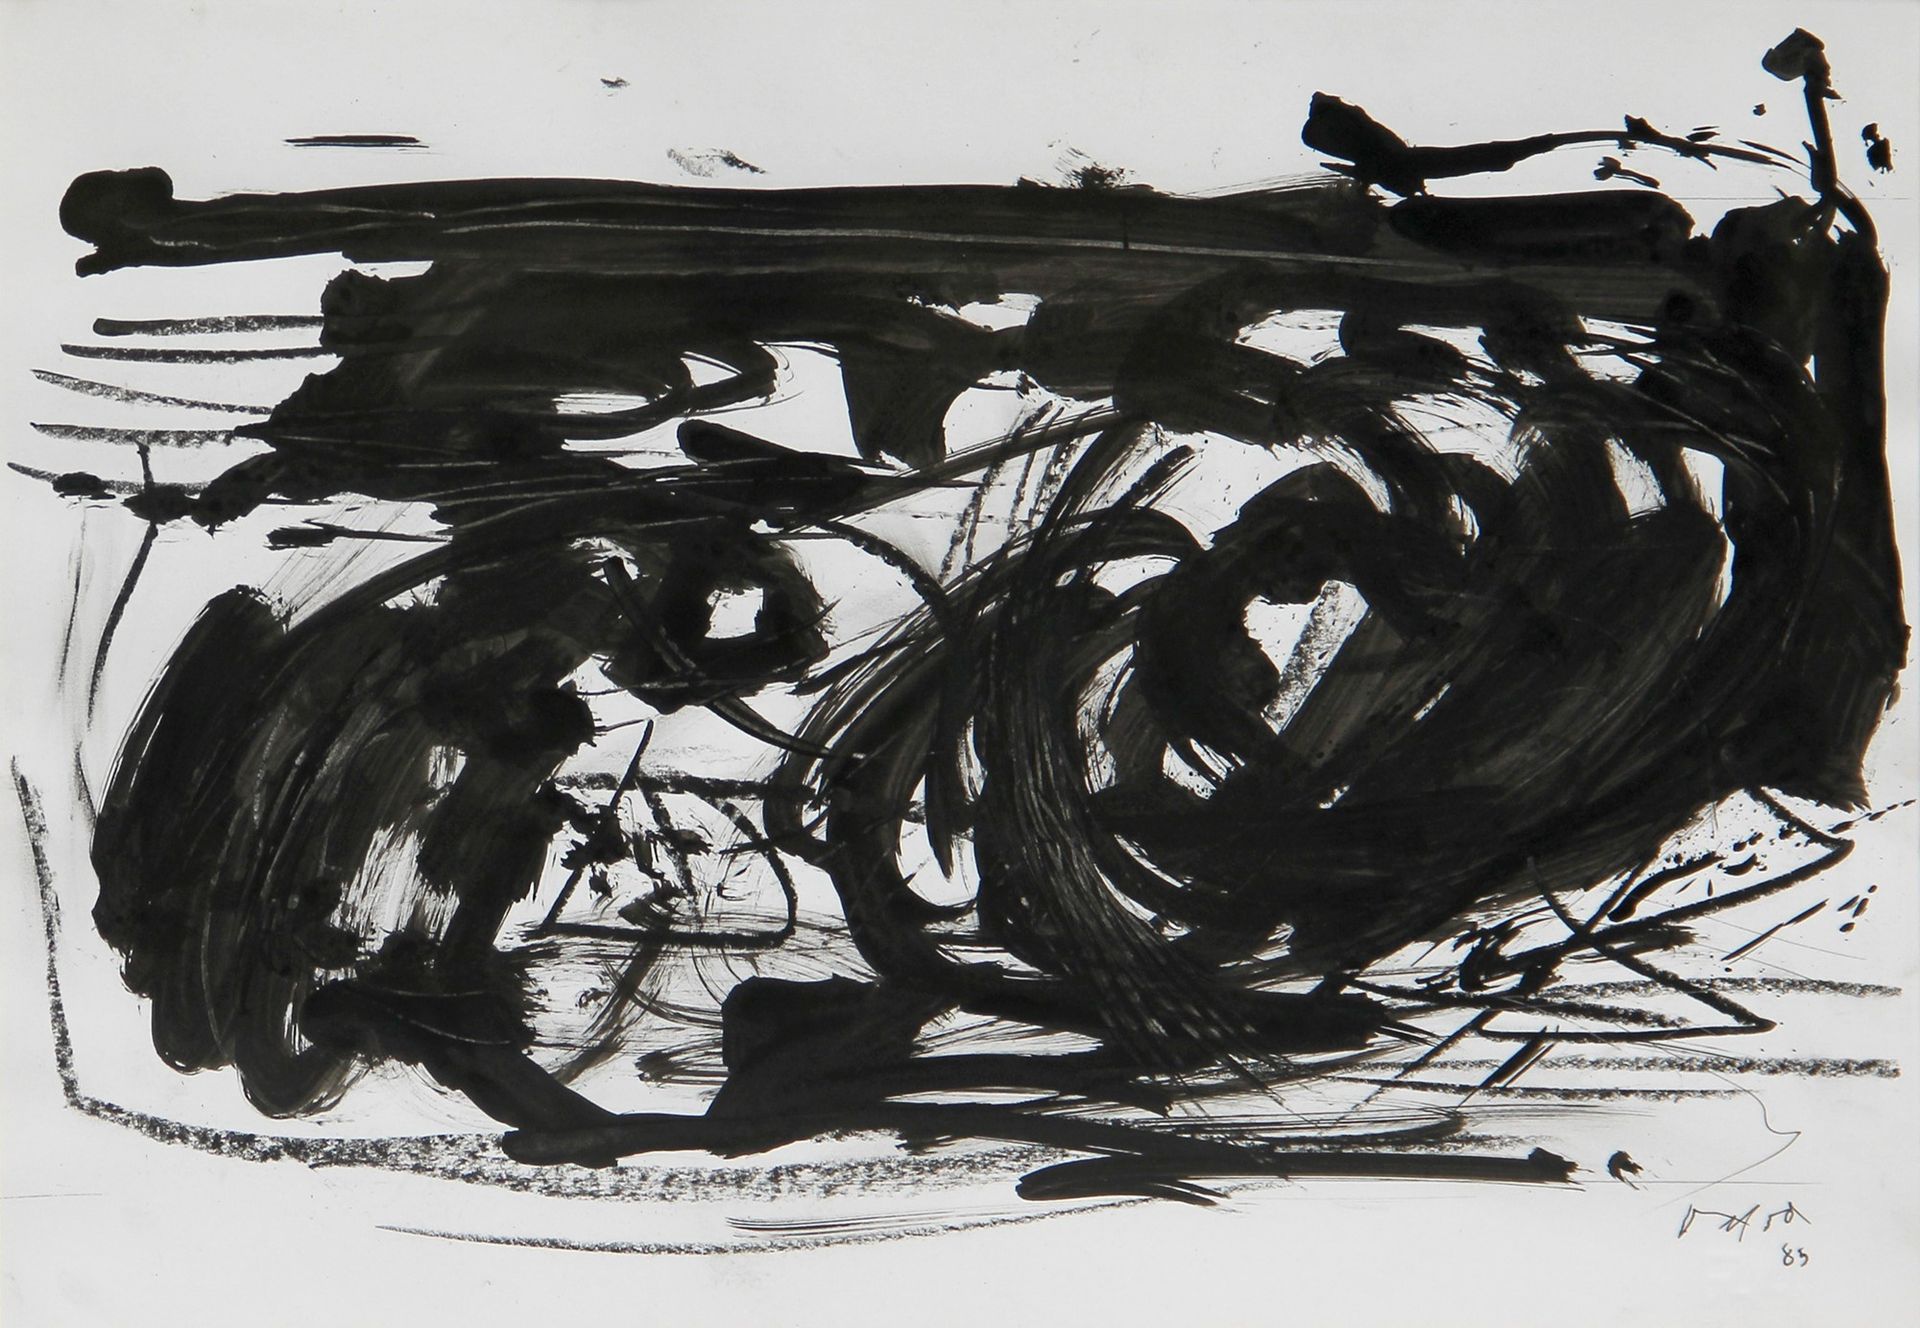 Emilio VEDOVA Untitled 1985, Tusche und Zeichenkohle auf Karton, cm. 33x47,8

Be&hellip;